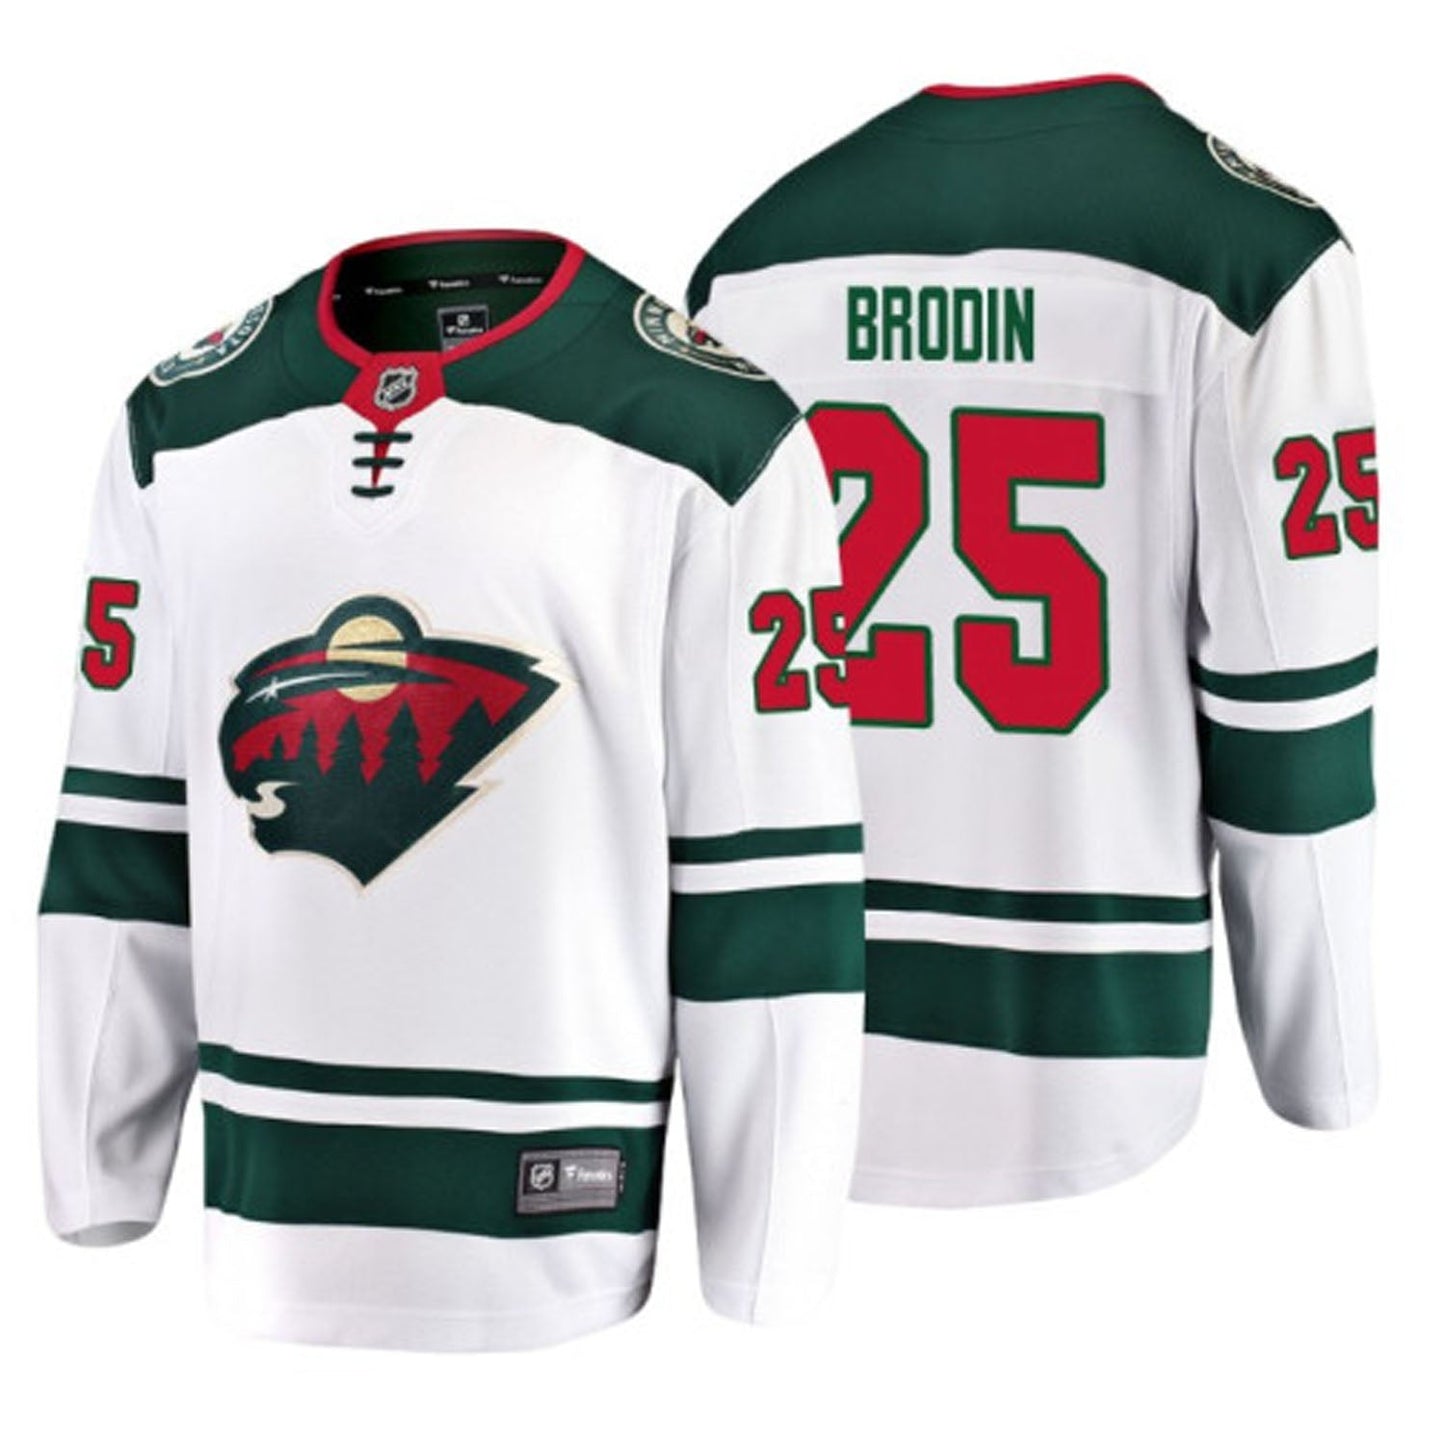 NHL Jonas Brodin Minnesota Wild 25 Jersey